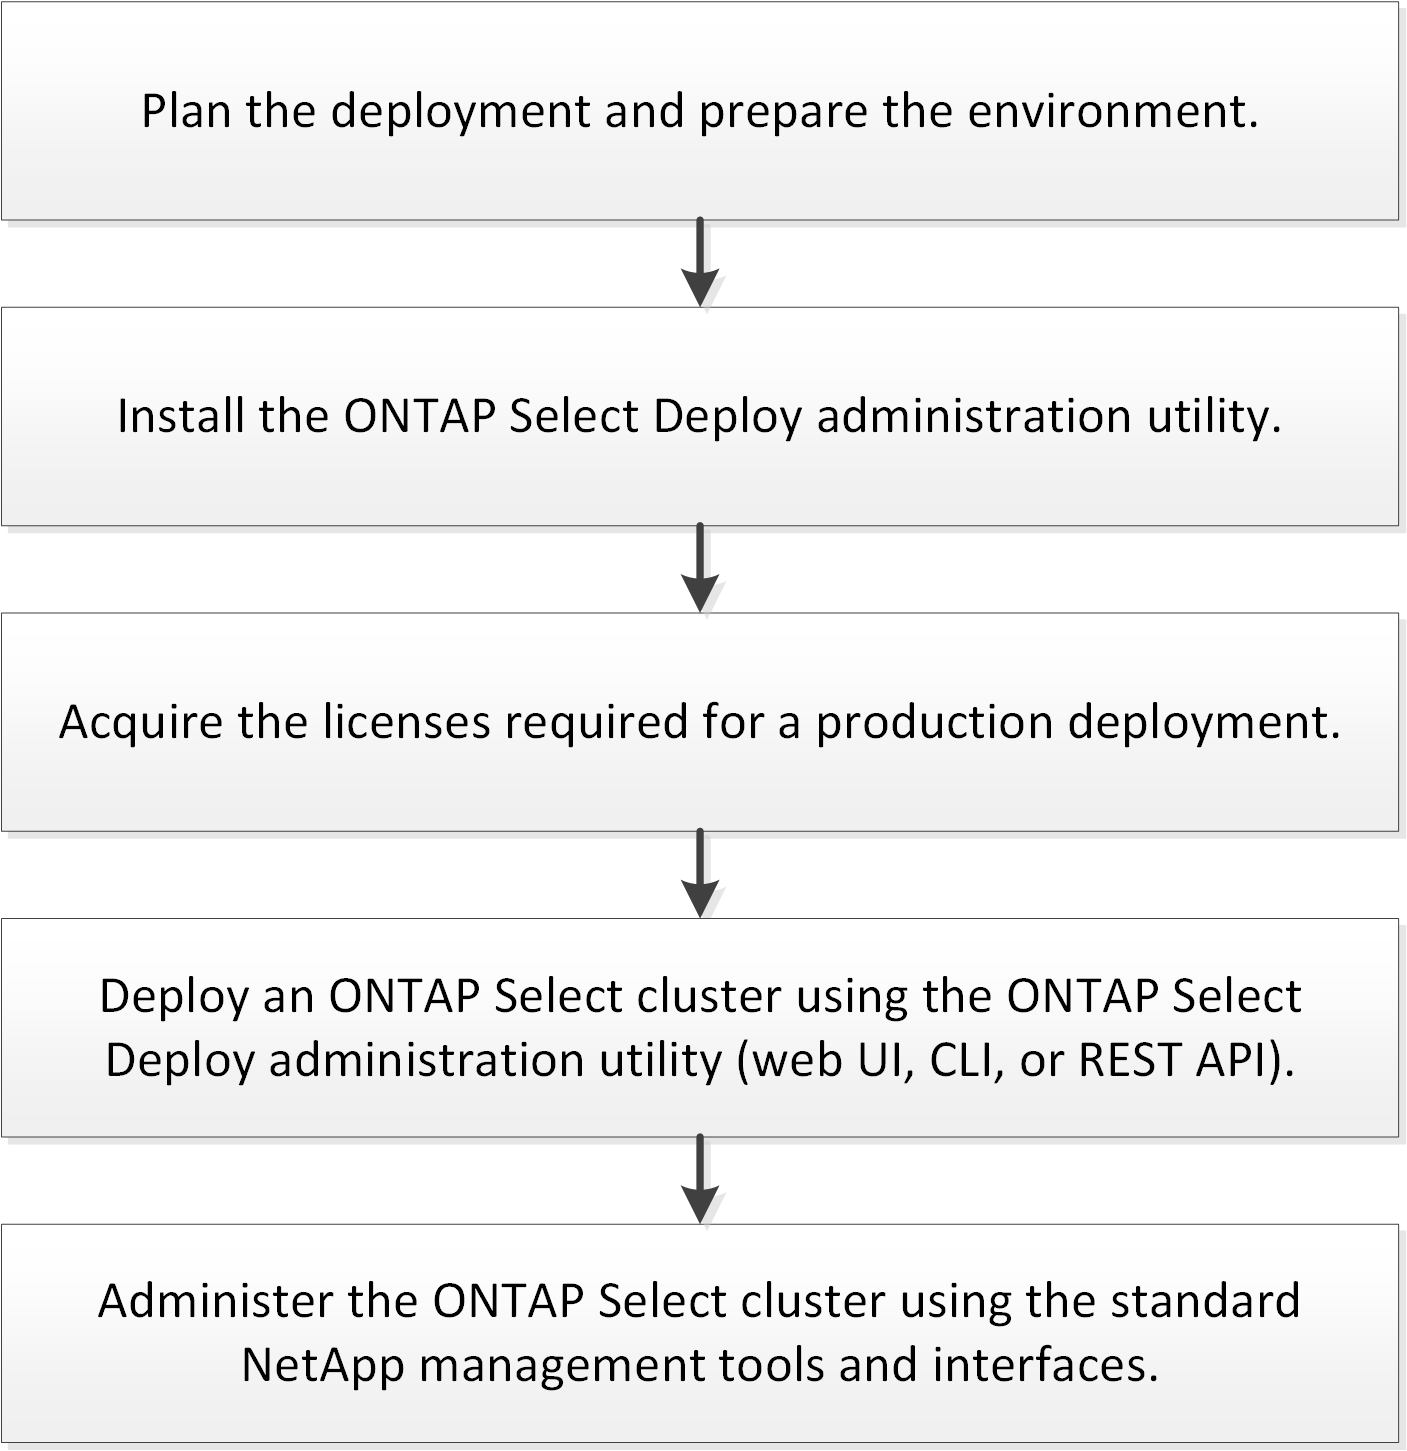 Décrit l'intégralité du workflow nécessaire au déploiement d'un cluster ONTAP Select.